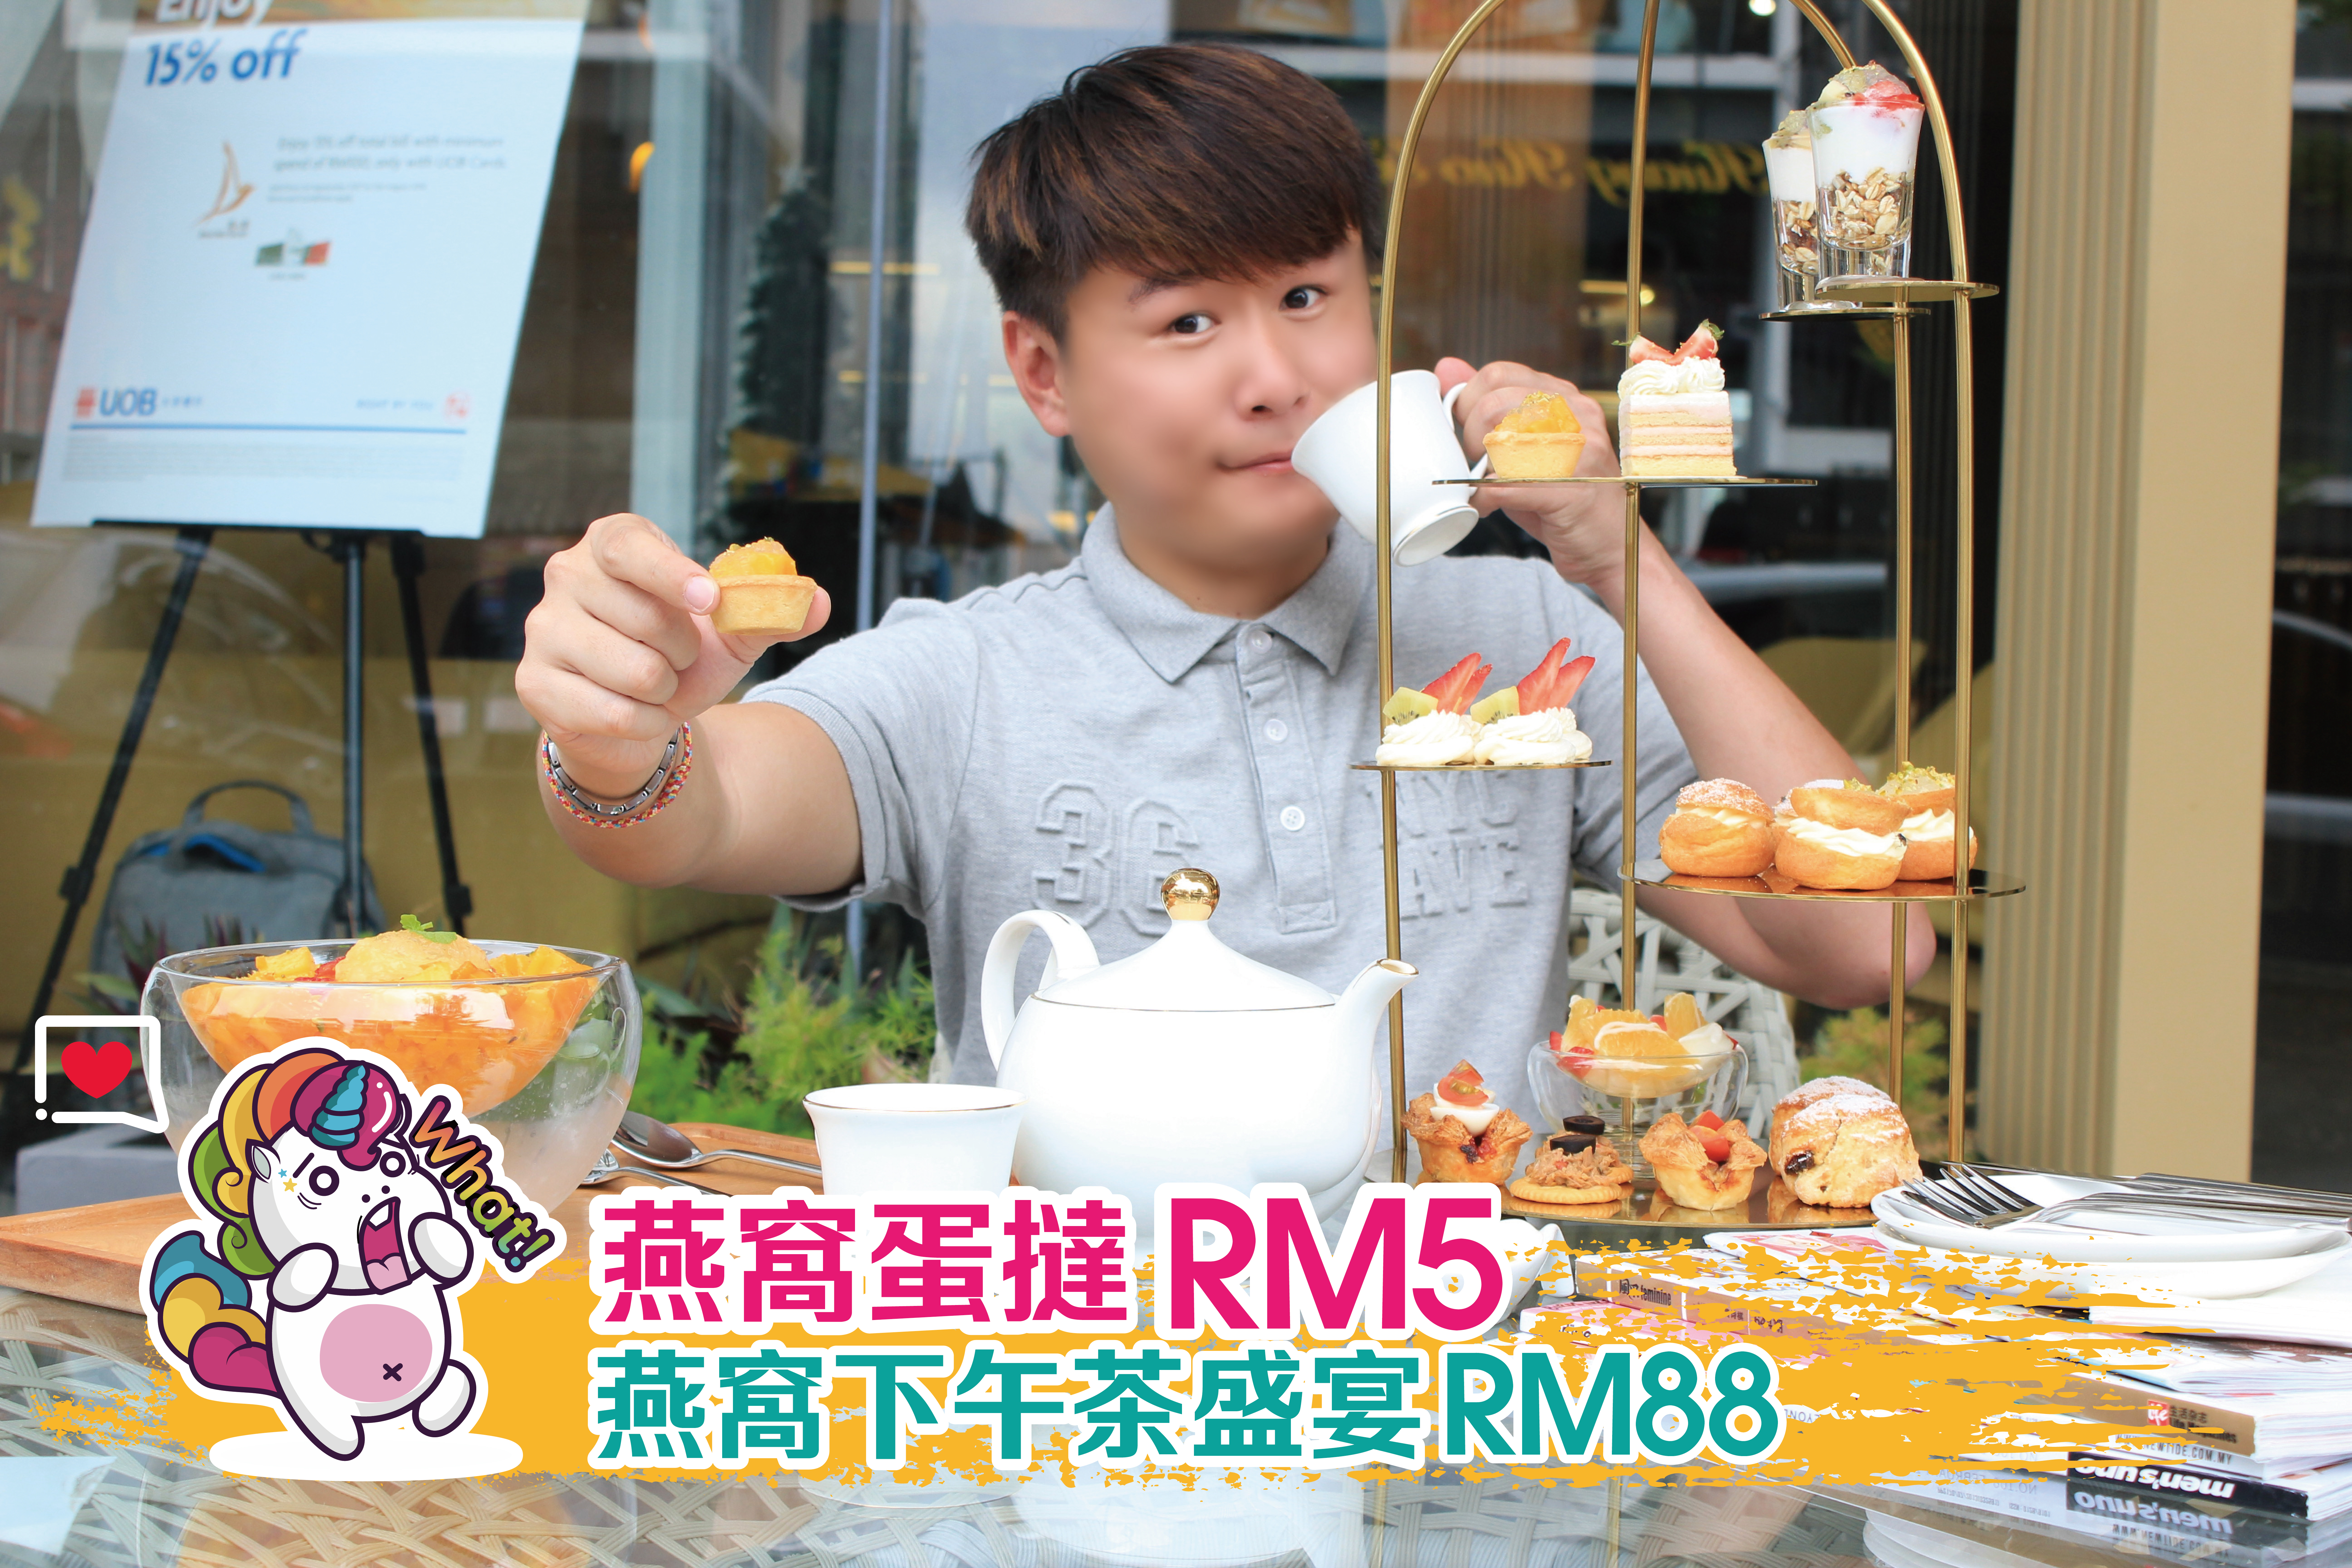 #来场燕窝盛宴吧！#燕窝蛋挞一个只需RM5